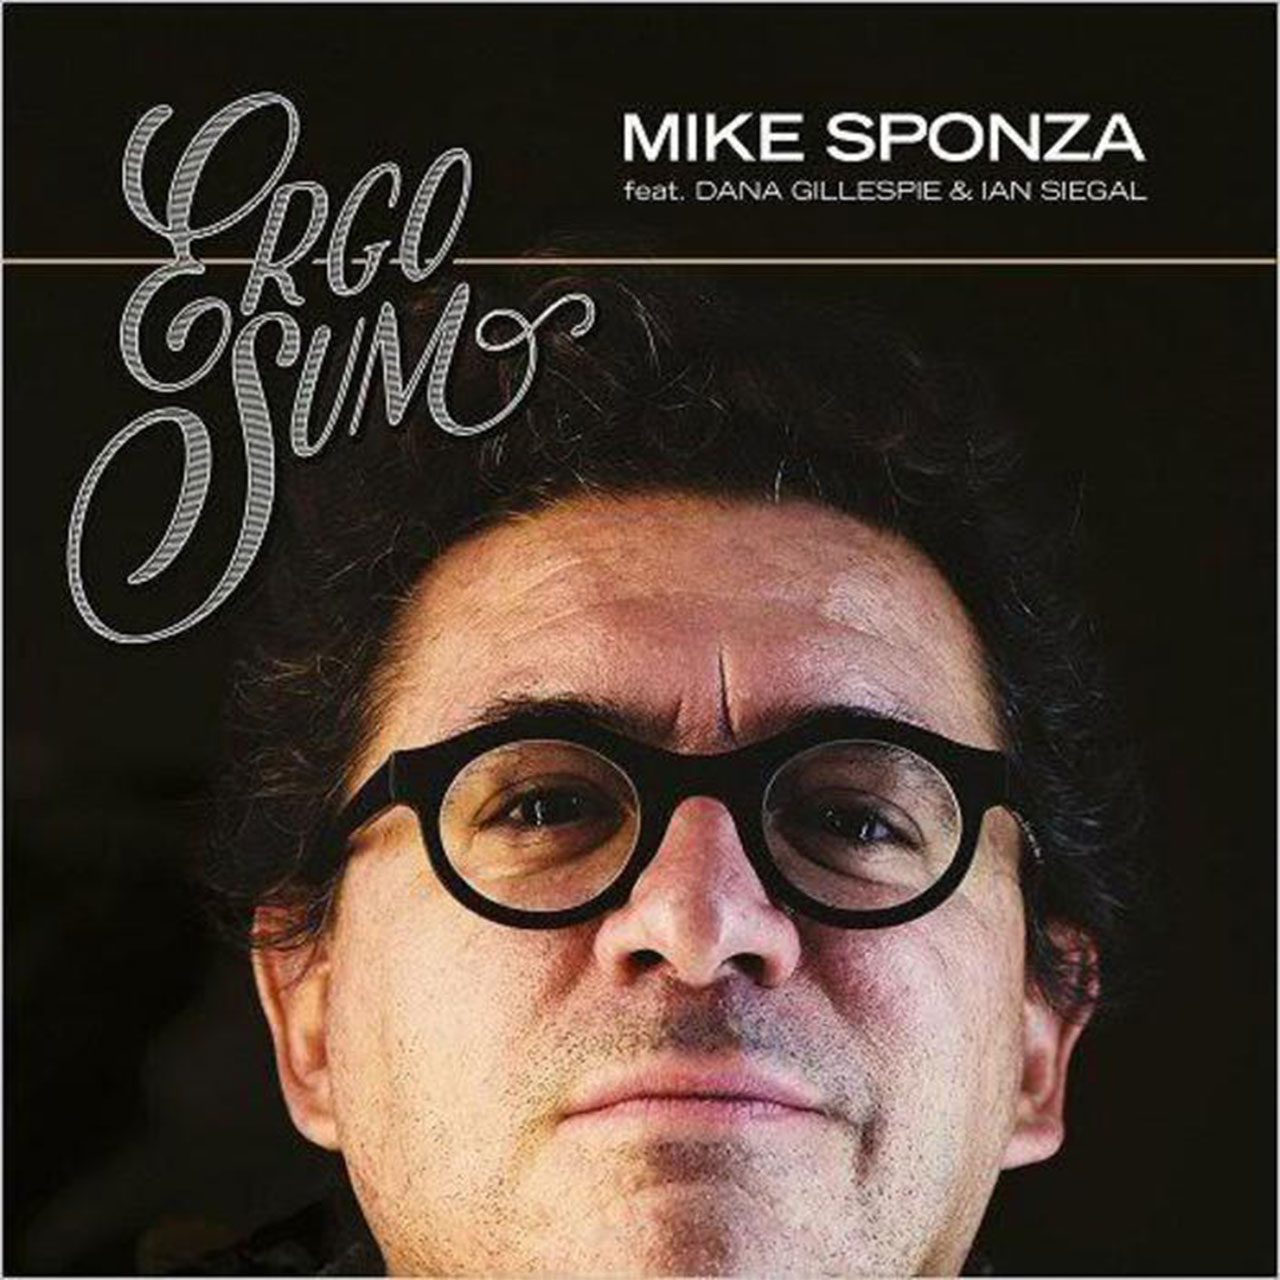 Mike-Sponza---“Ergo-Sum” cover album